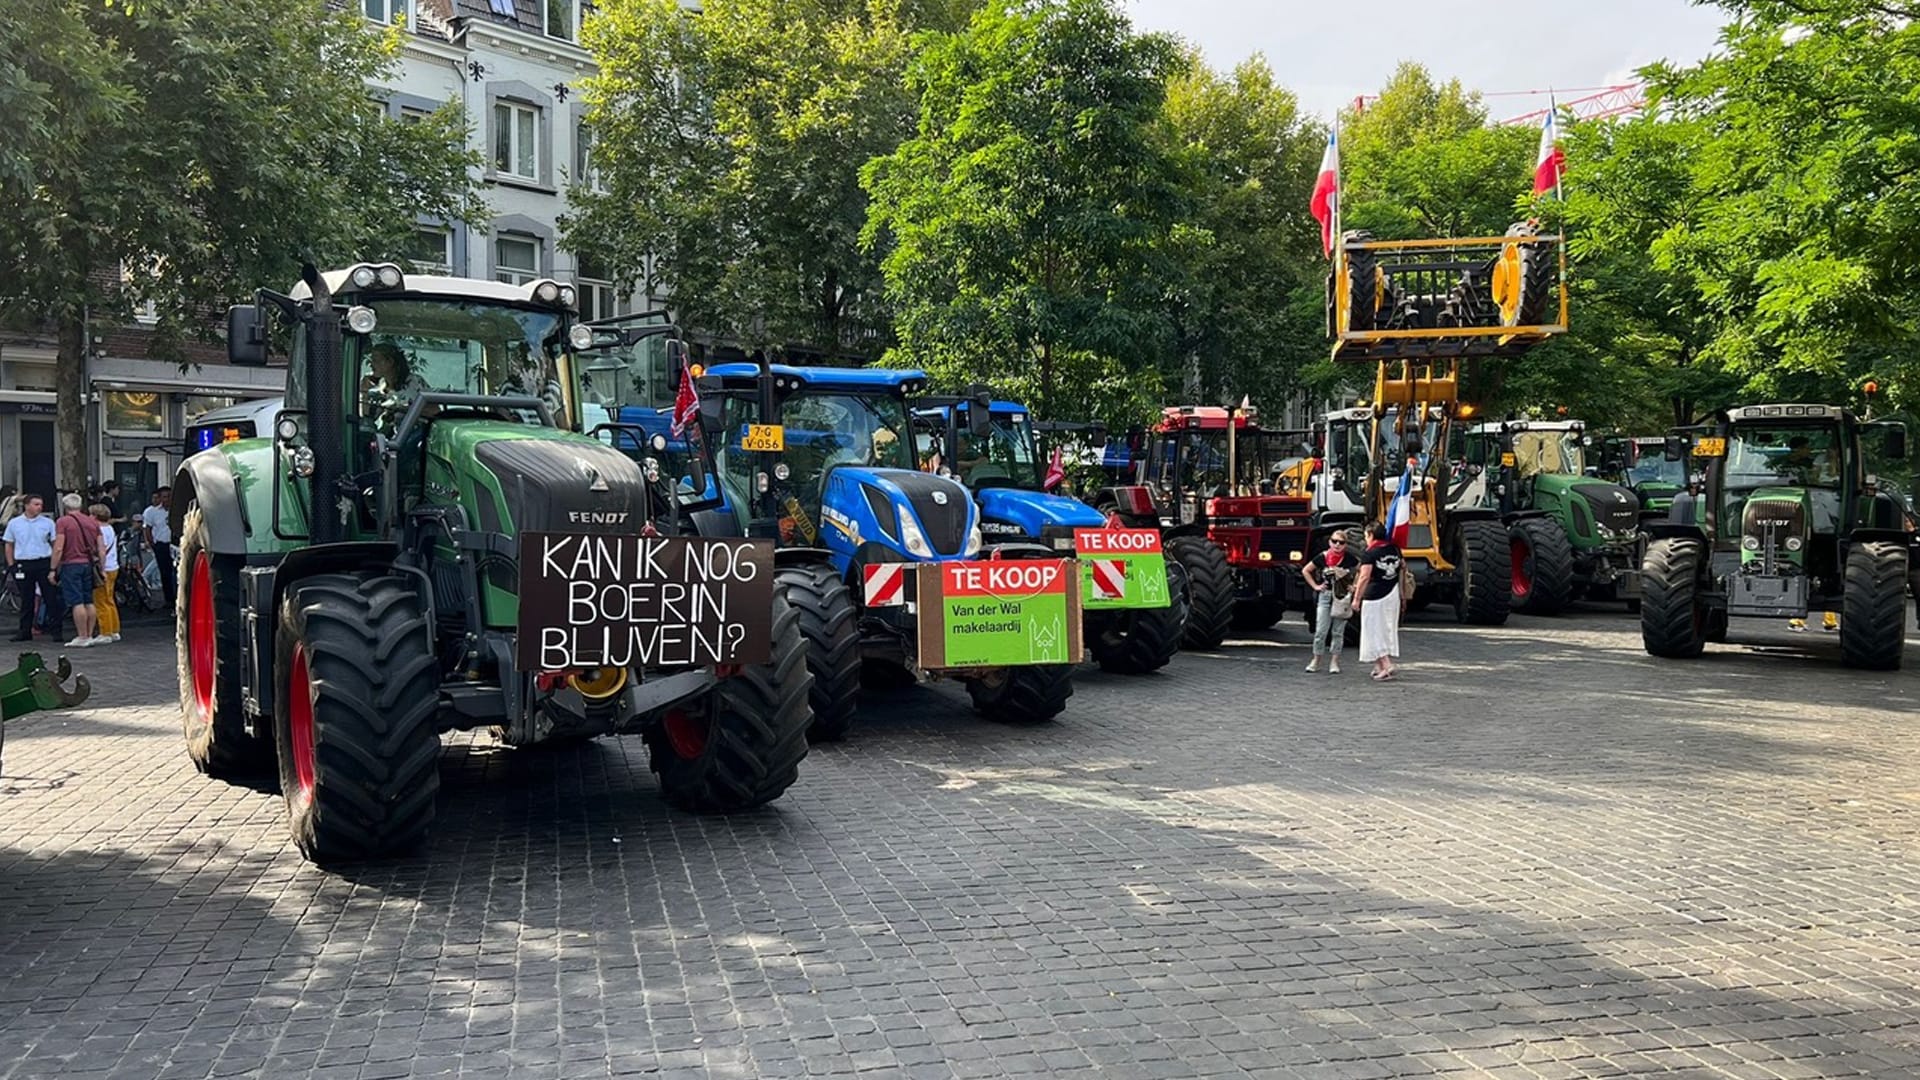 Publieksvriendelijke actie boeren in Maastricht, trekker bij concert André Rieu